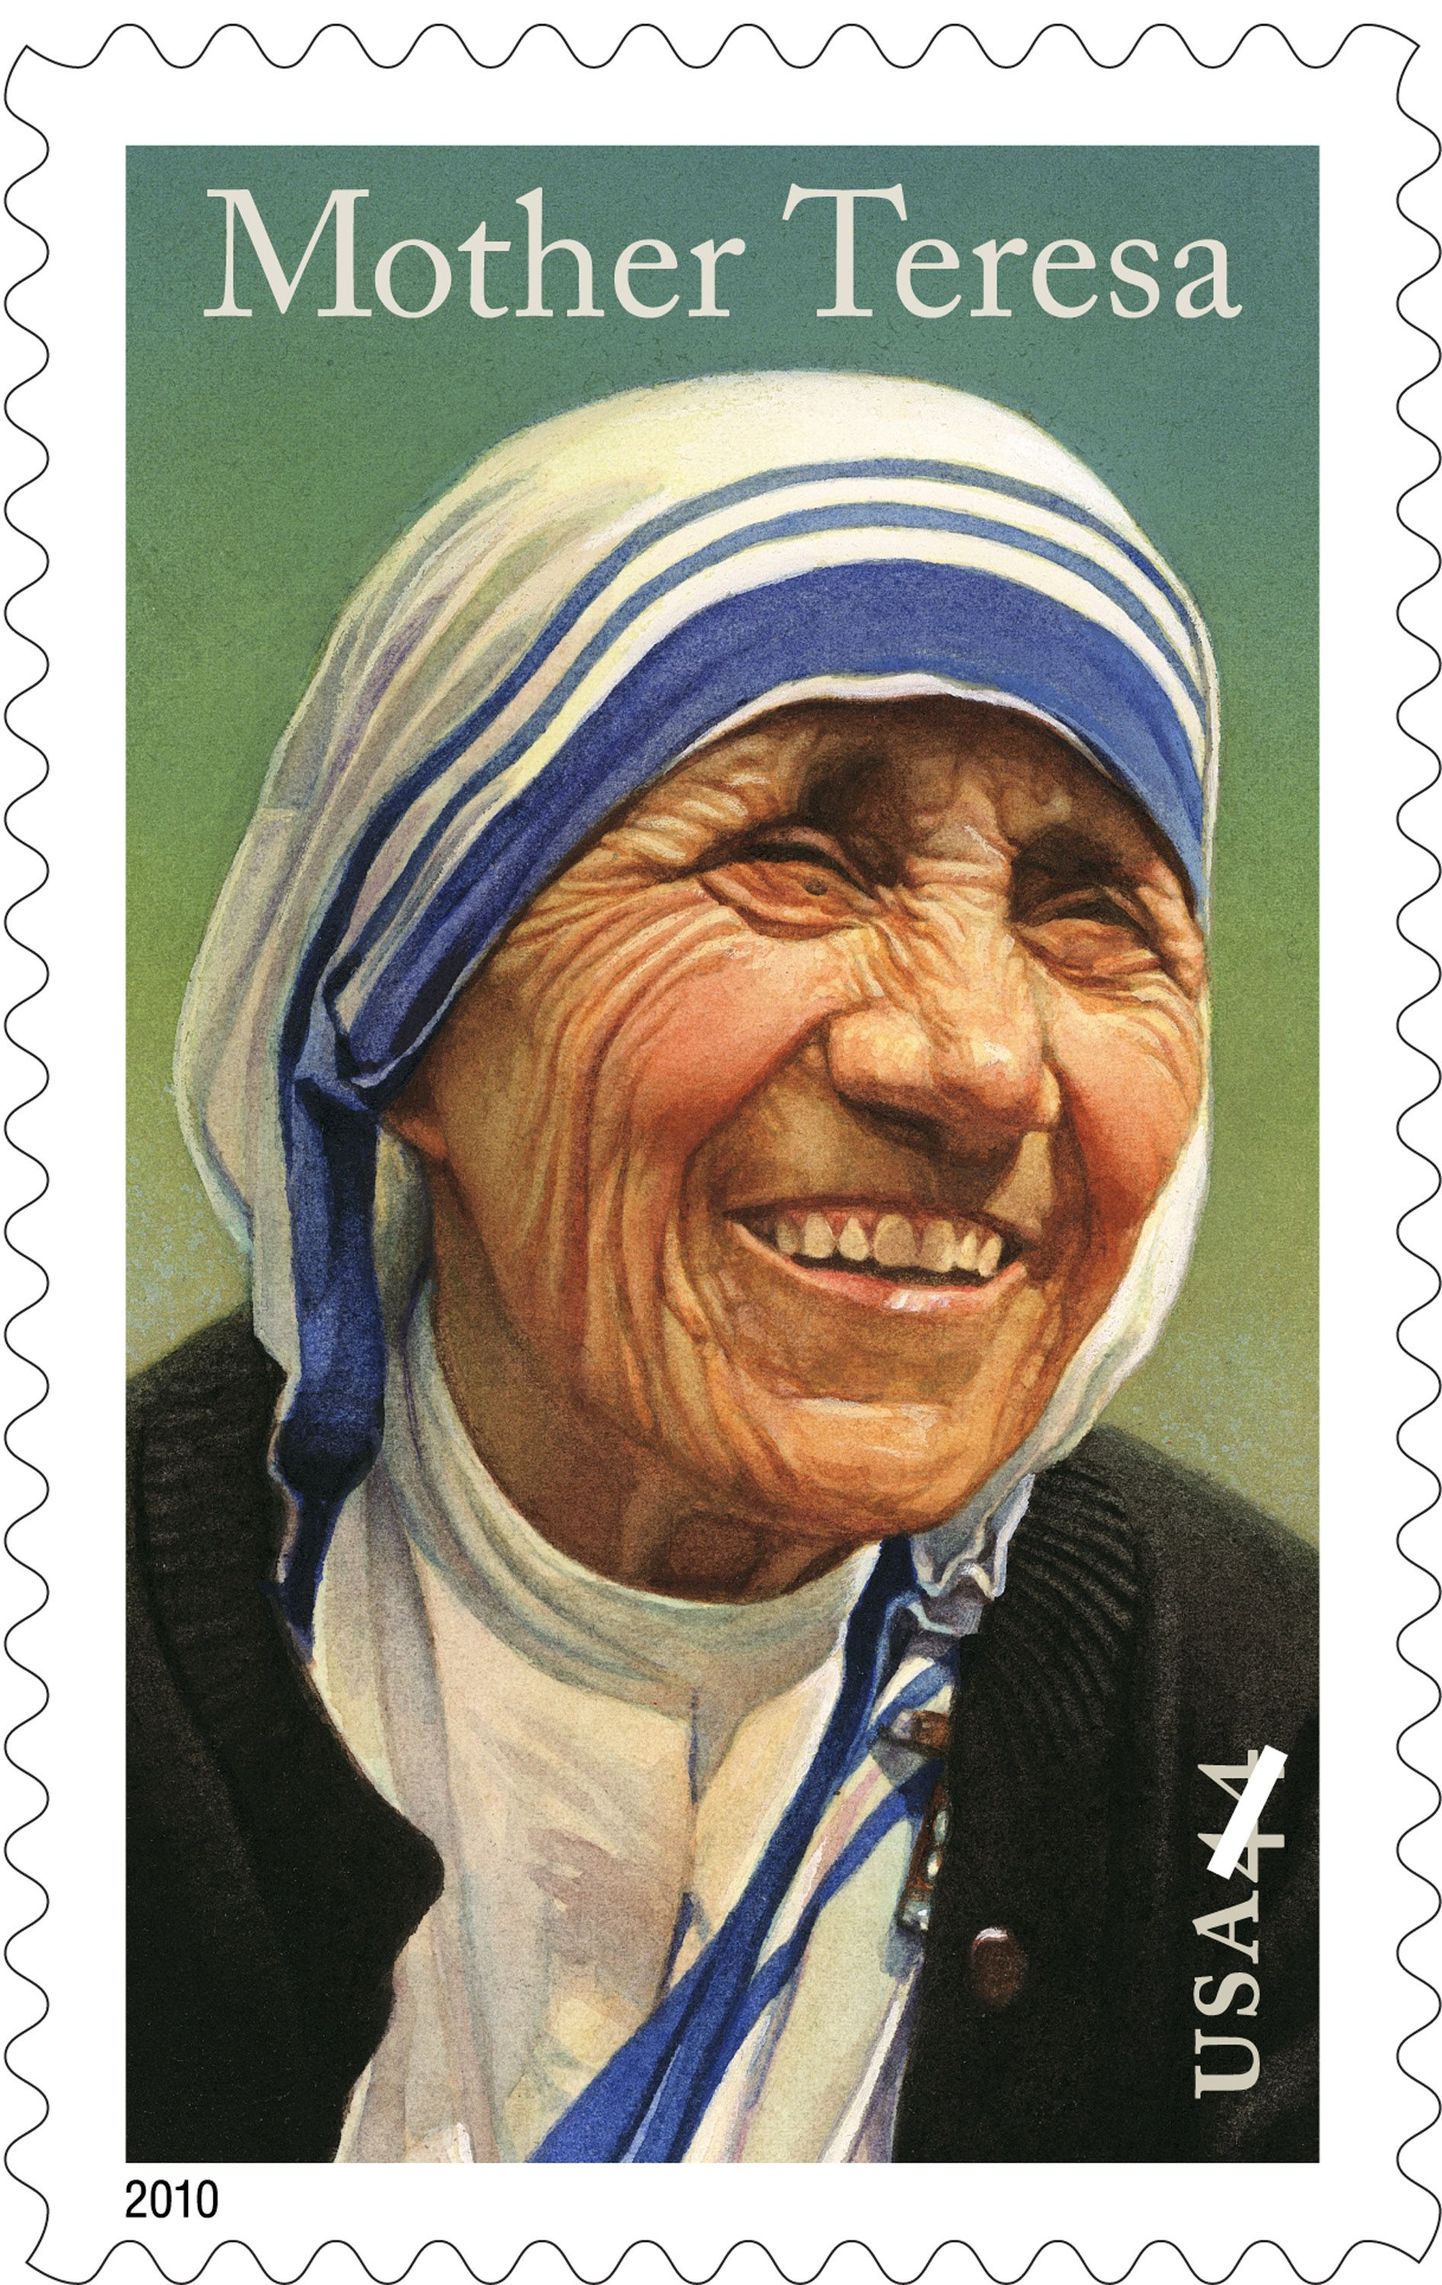 Üks Nobeli rahupreemia laureaatidest ema Teresa